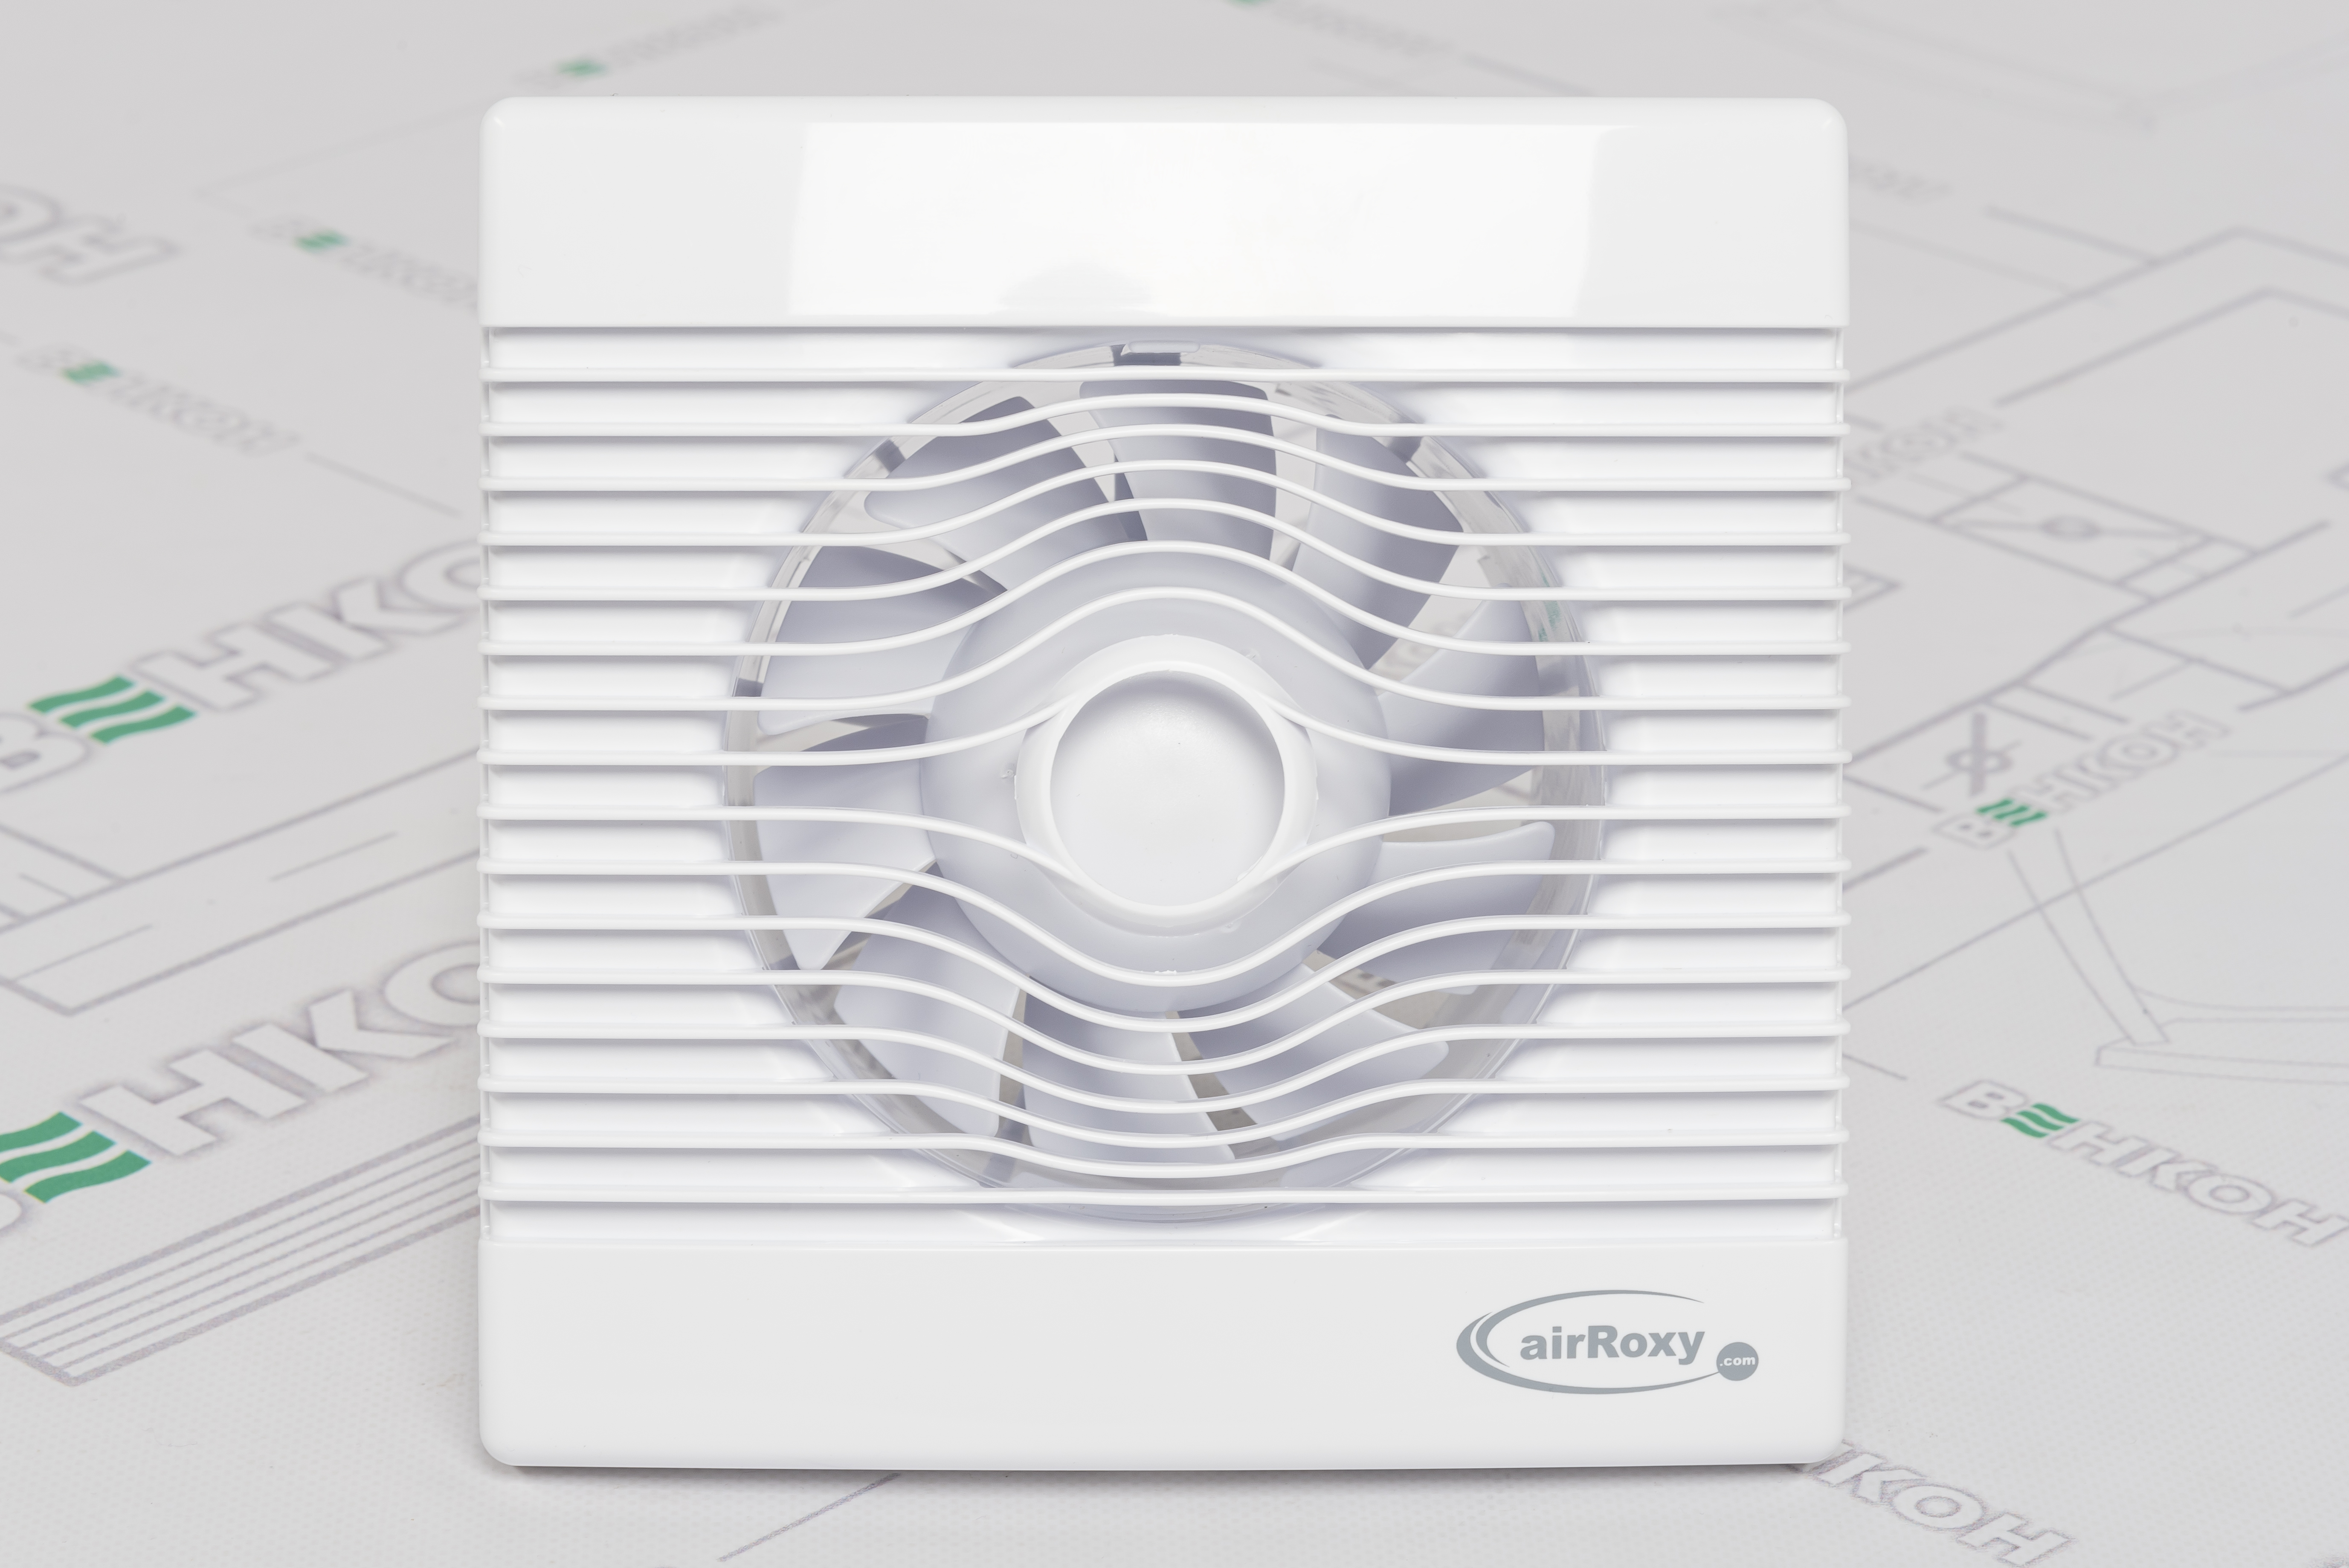 Вытяжной вентилятор AirRoxy pRemium 120 TS (01-019) цена 1770.00 грн - фотография 2